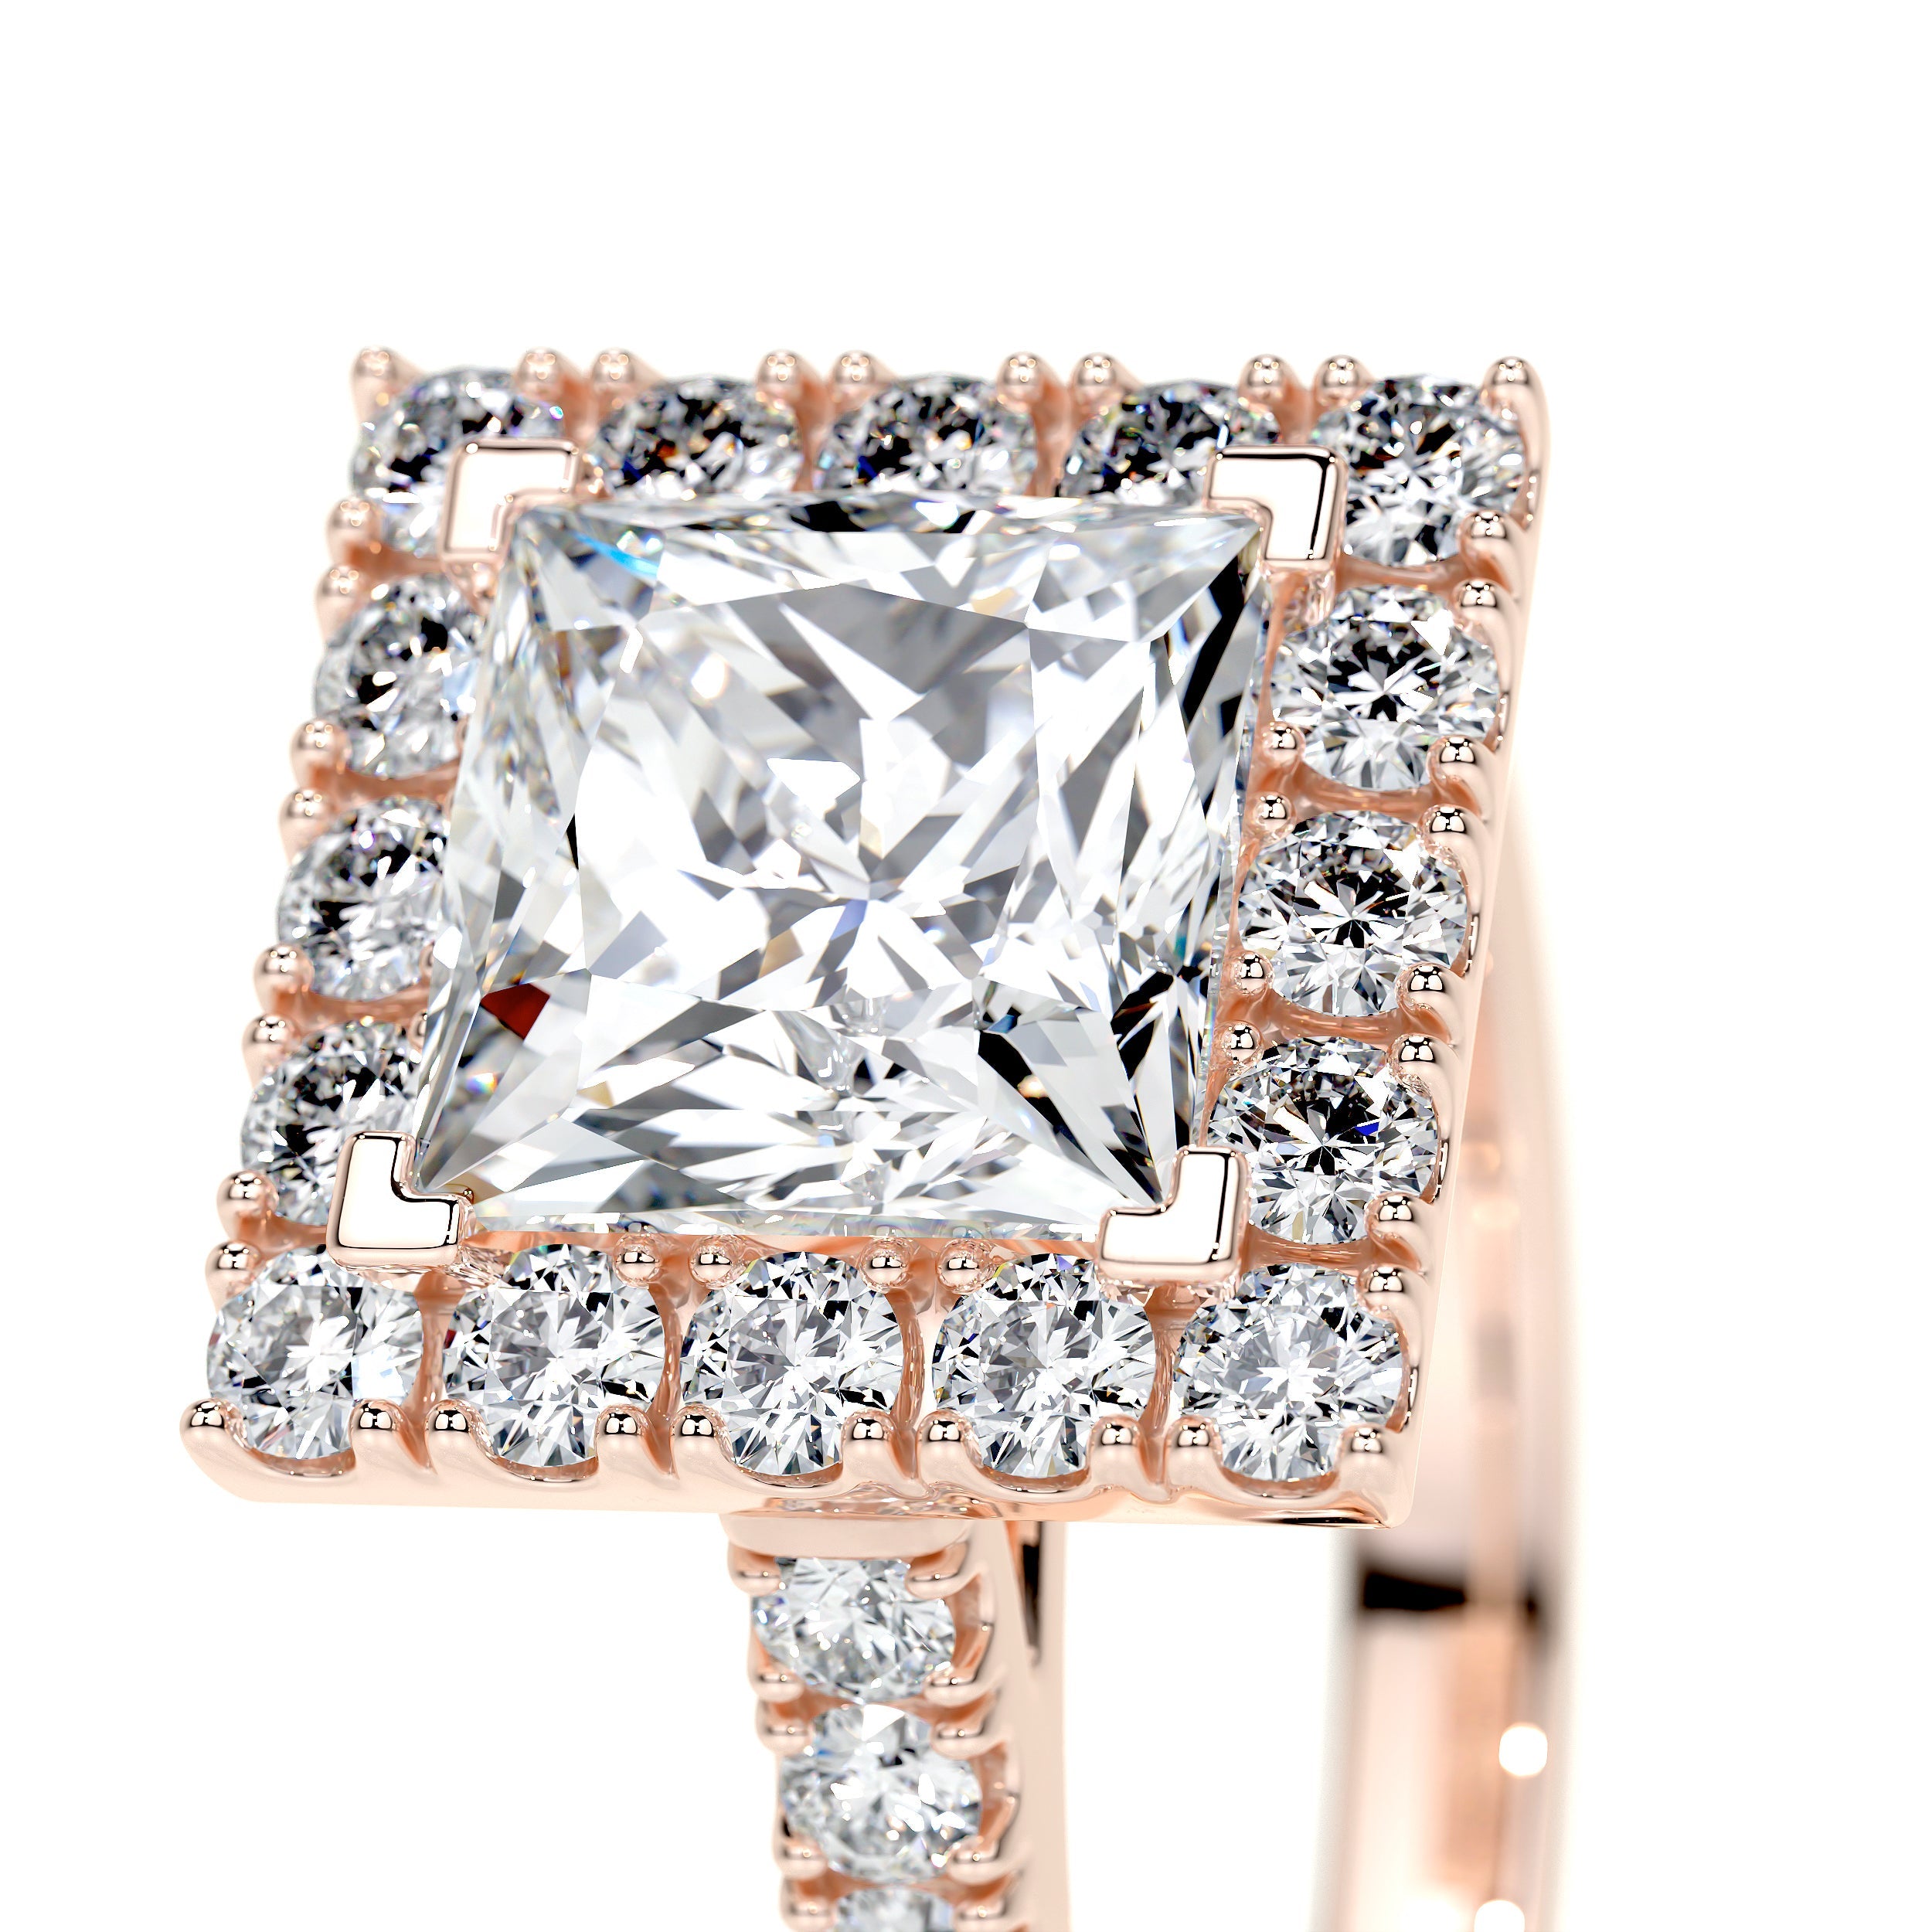 Patricia Lab Grown Diamond Ring   (2.5 Carat) -14K Rose Gold